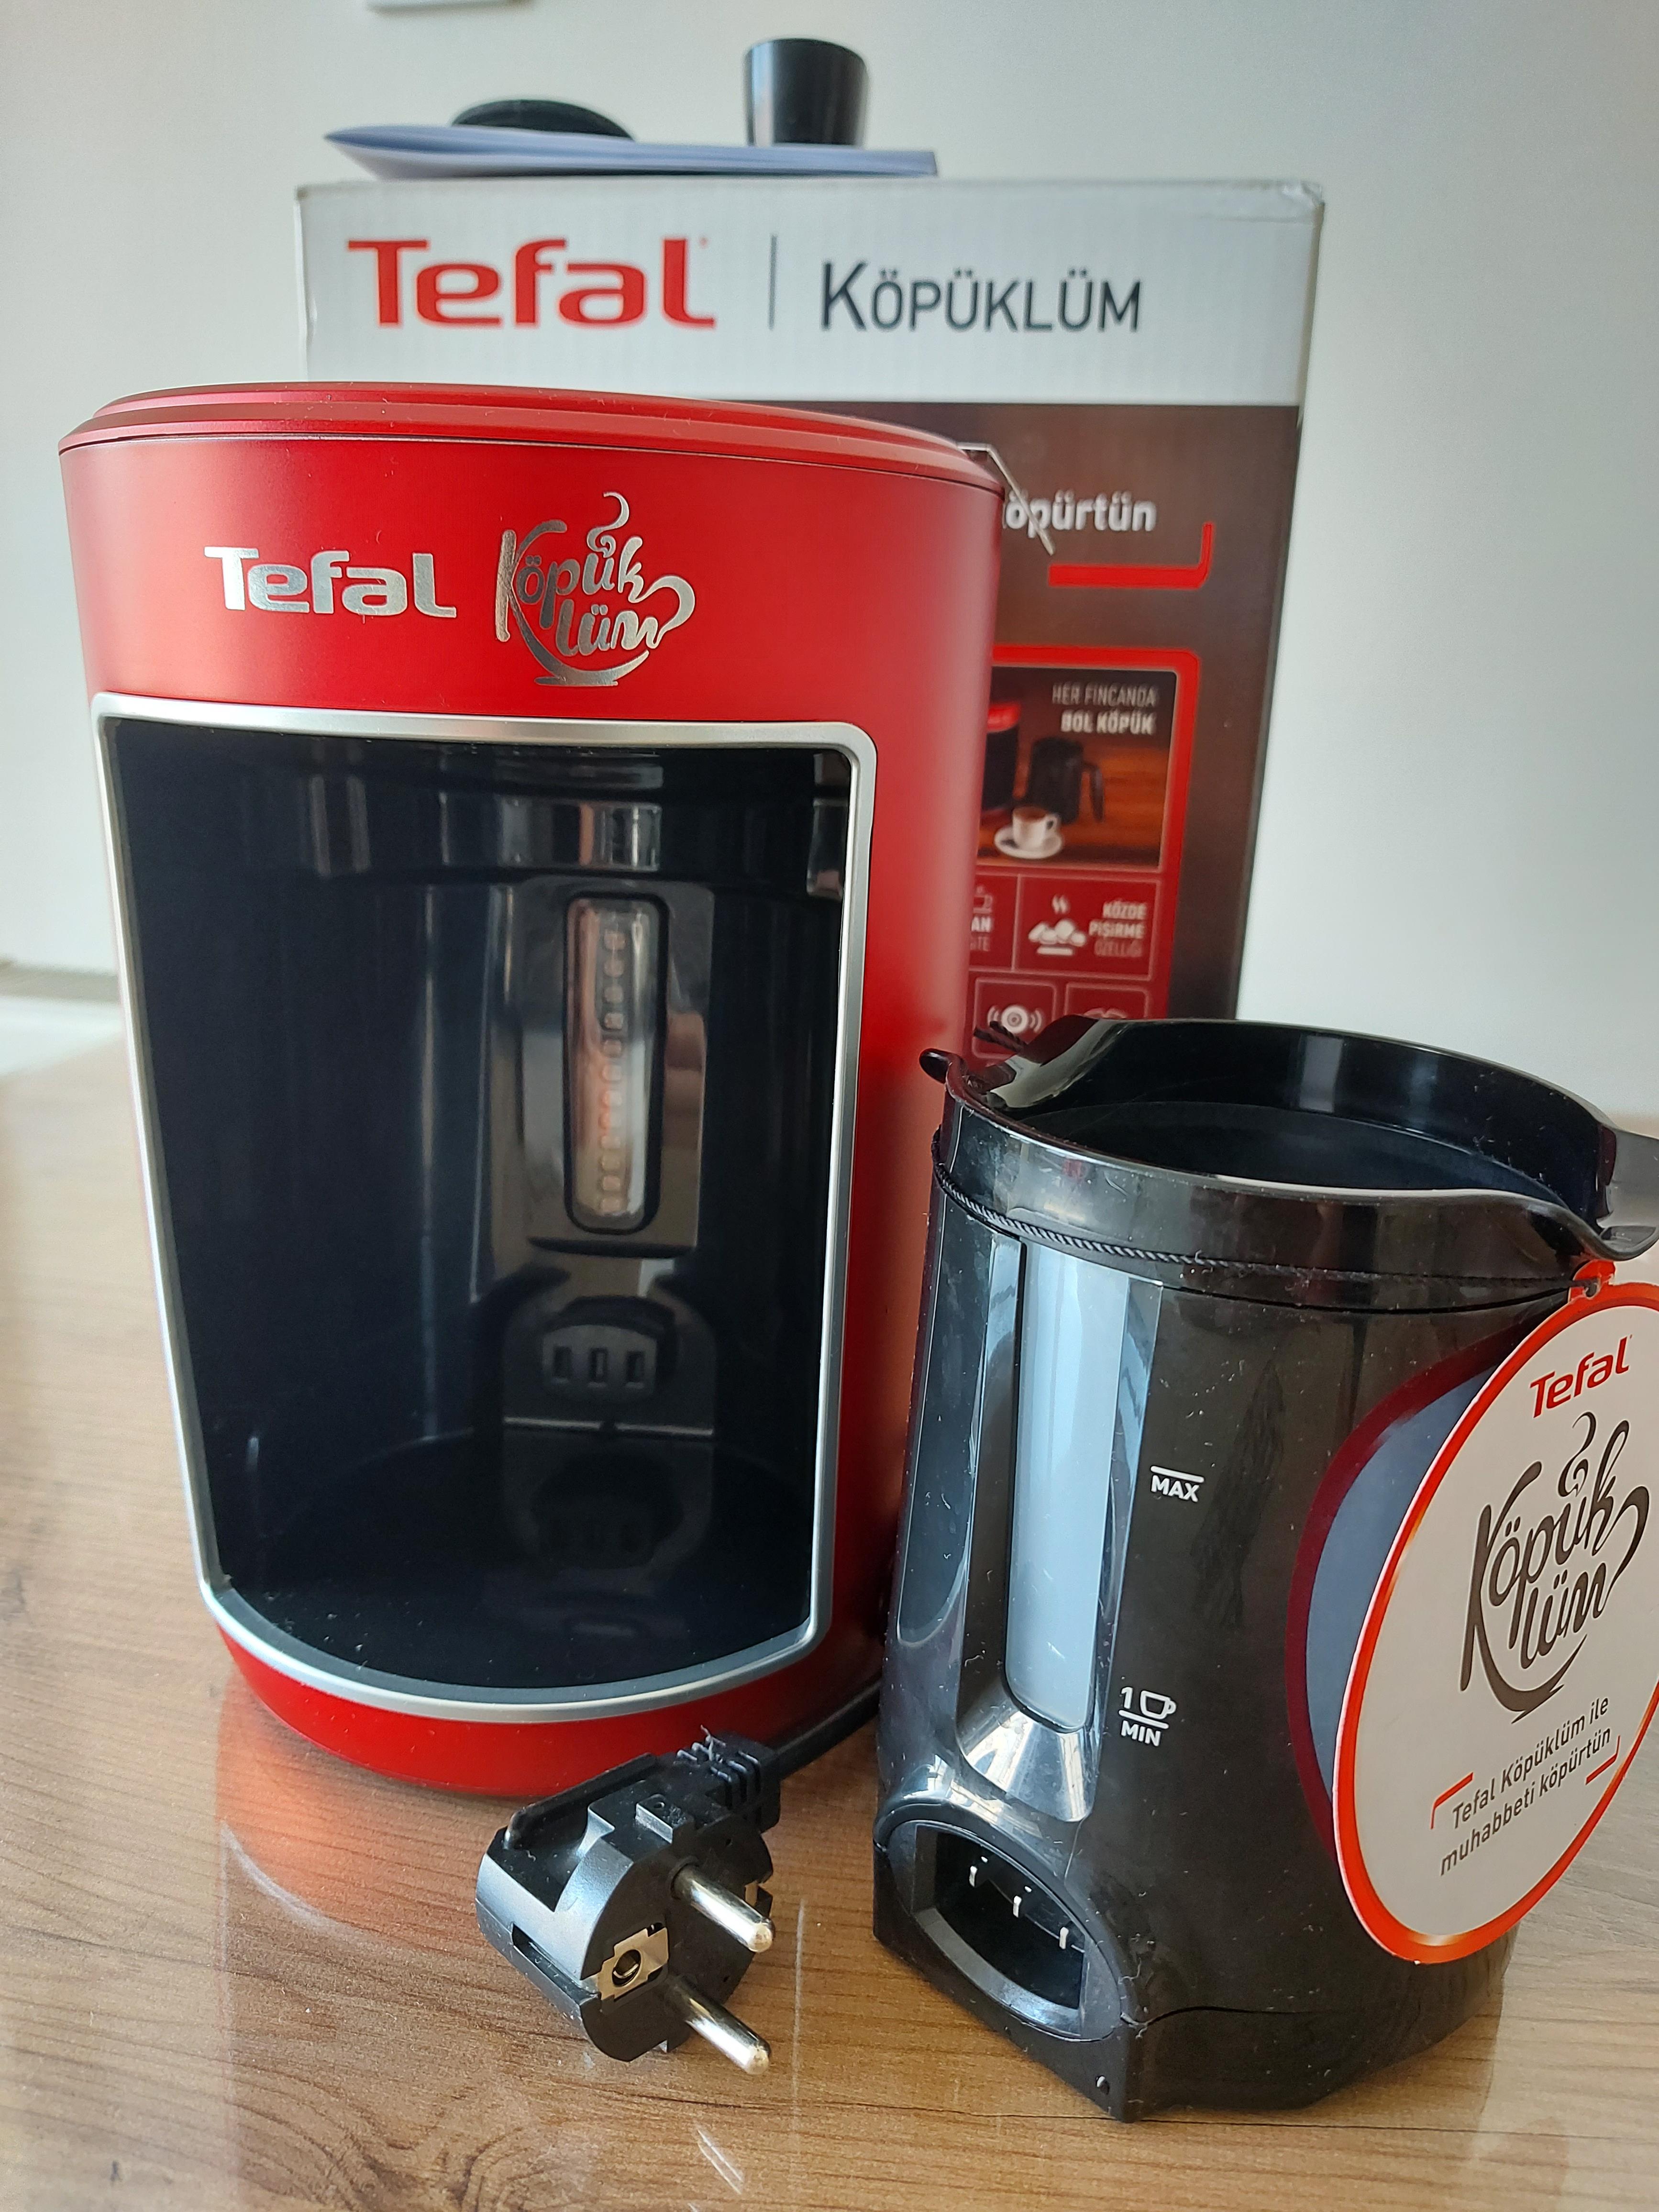 SATILIK TEFAL Köpüklüm Türk Kahve Makinesi | DonanımHaber Forum